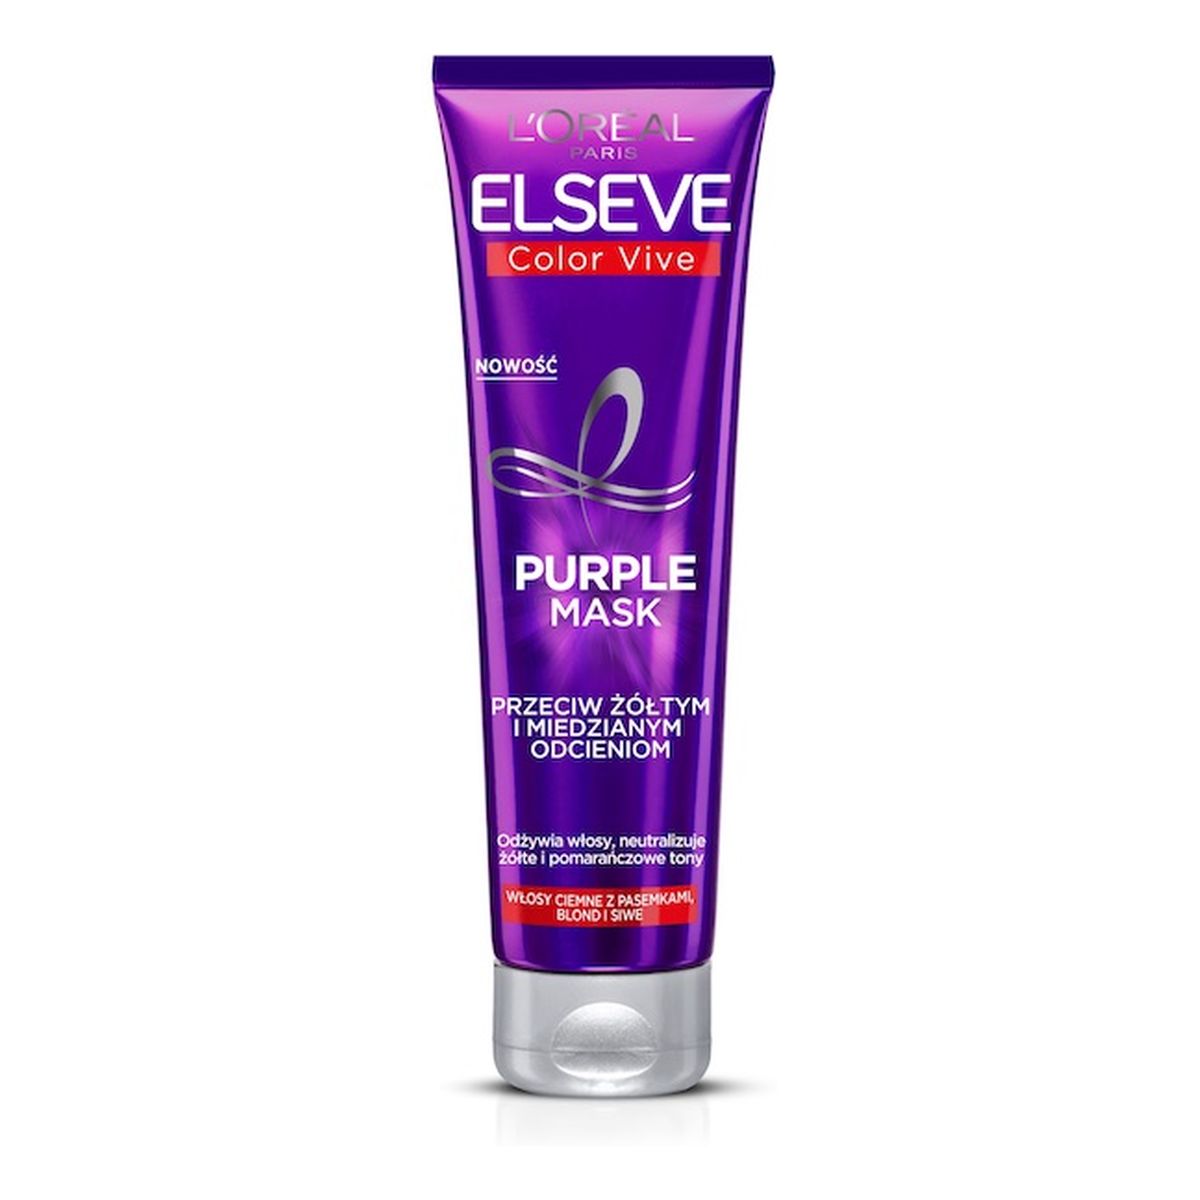 Elseve Color Vive Purple Mask maska do włosów przeciw żółtym i miedzianym odcieniom 150ml